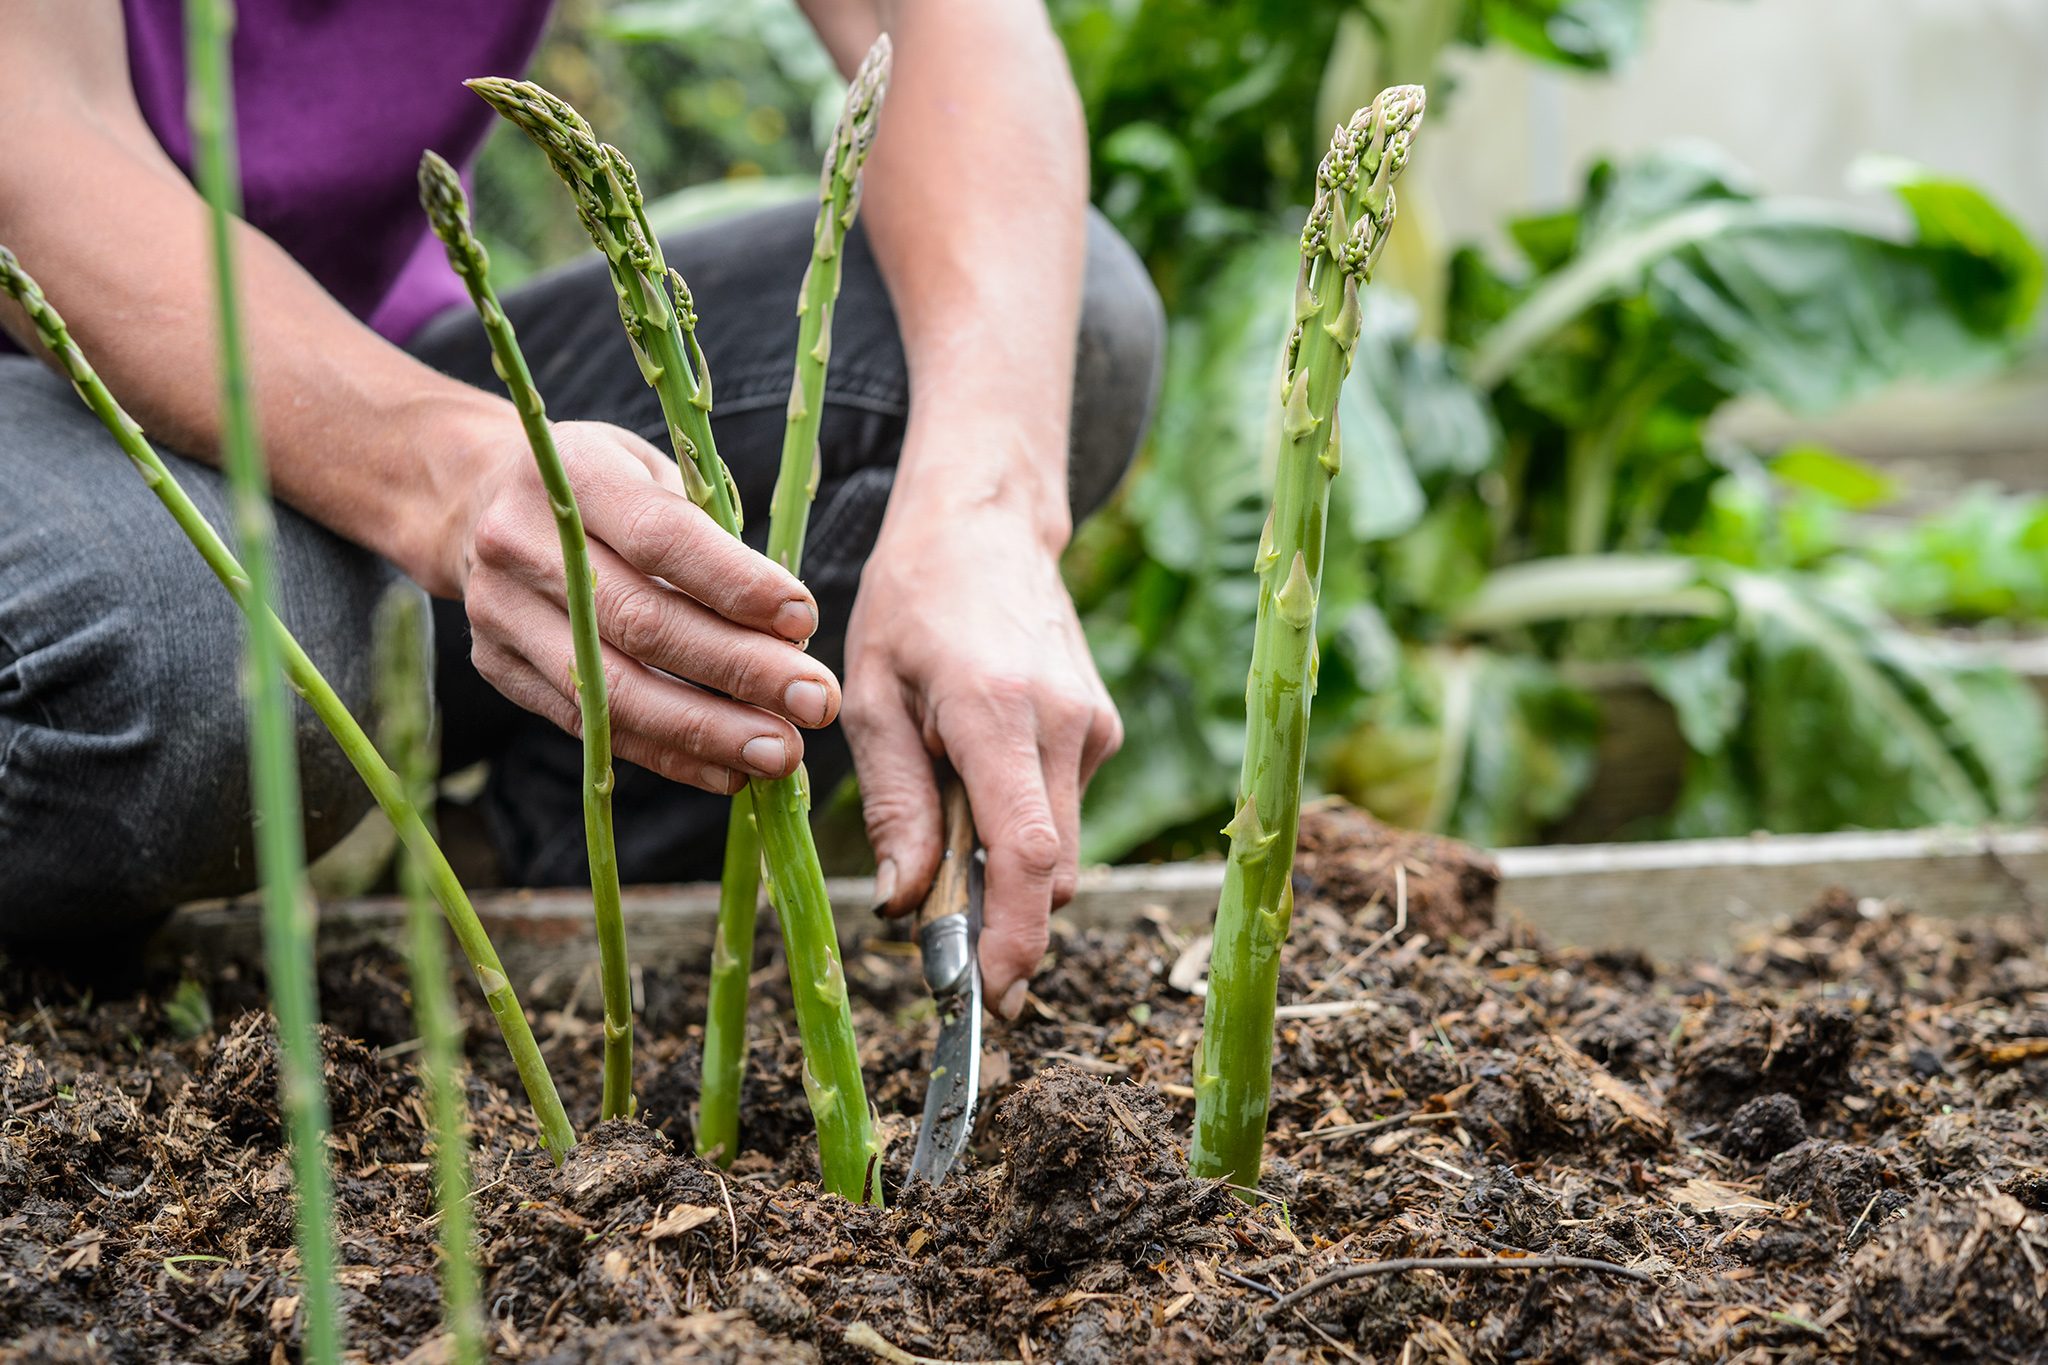 Companion plants for asparagus